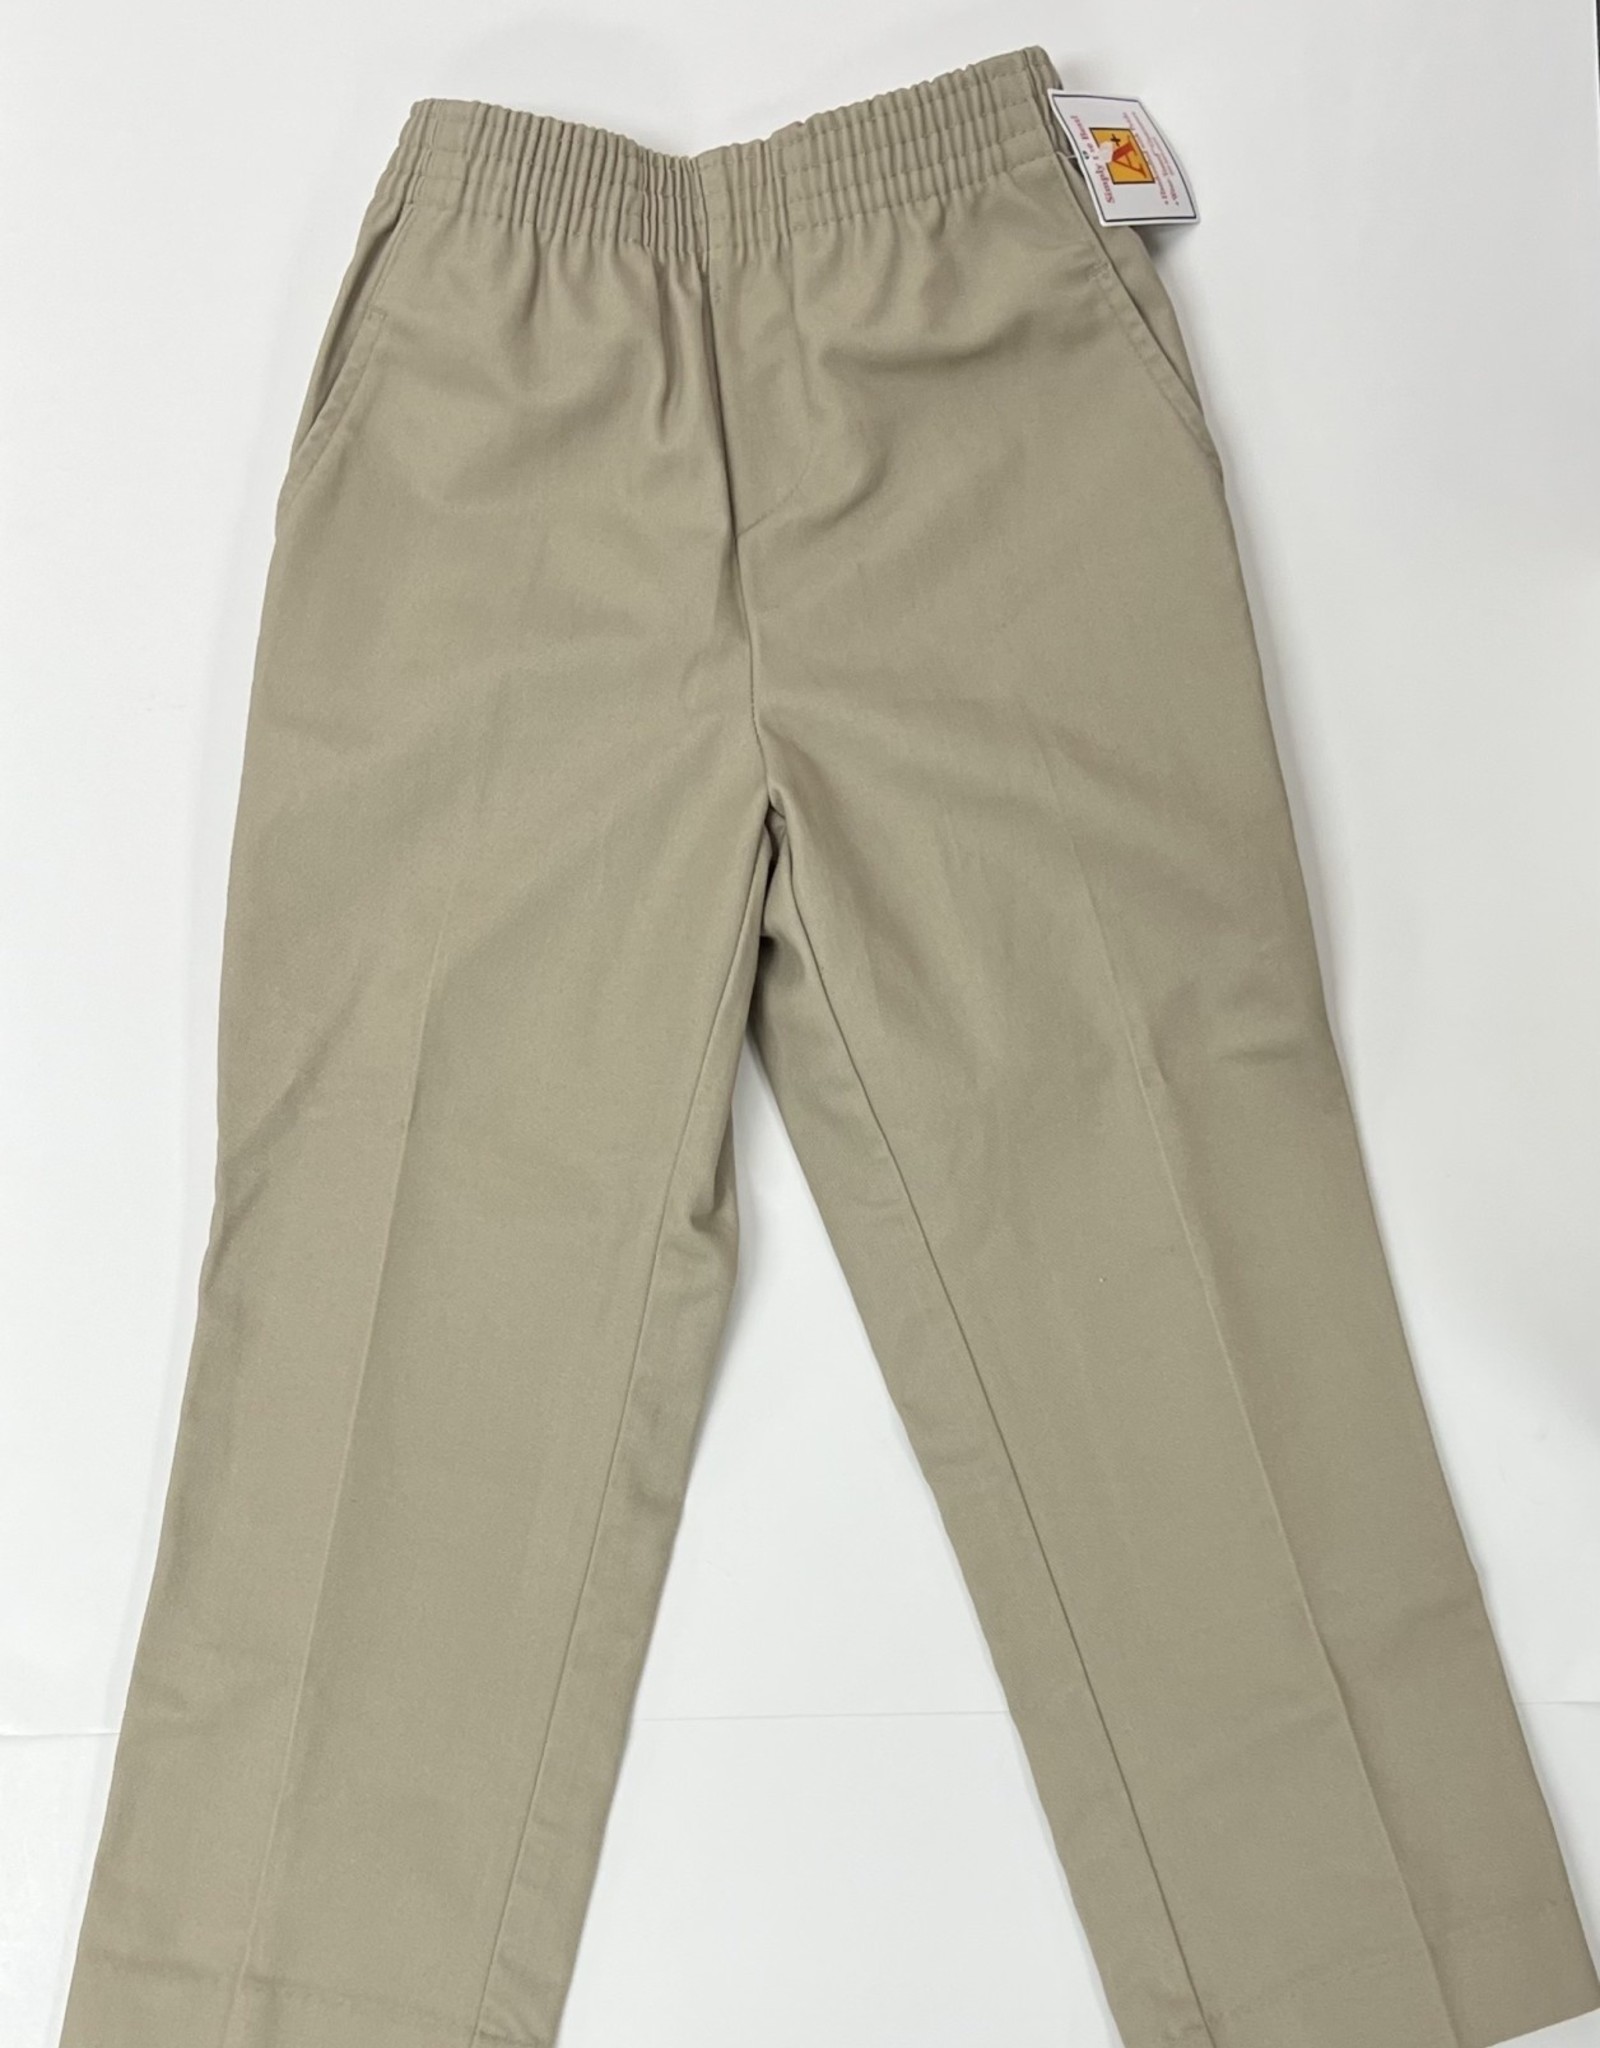 School Apparel Unisex Khaki Pants/Elastic - JK Only